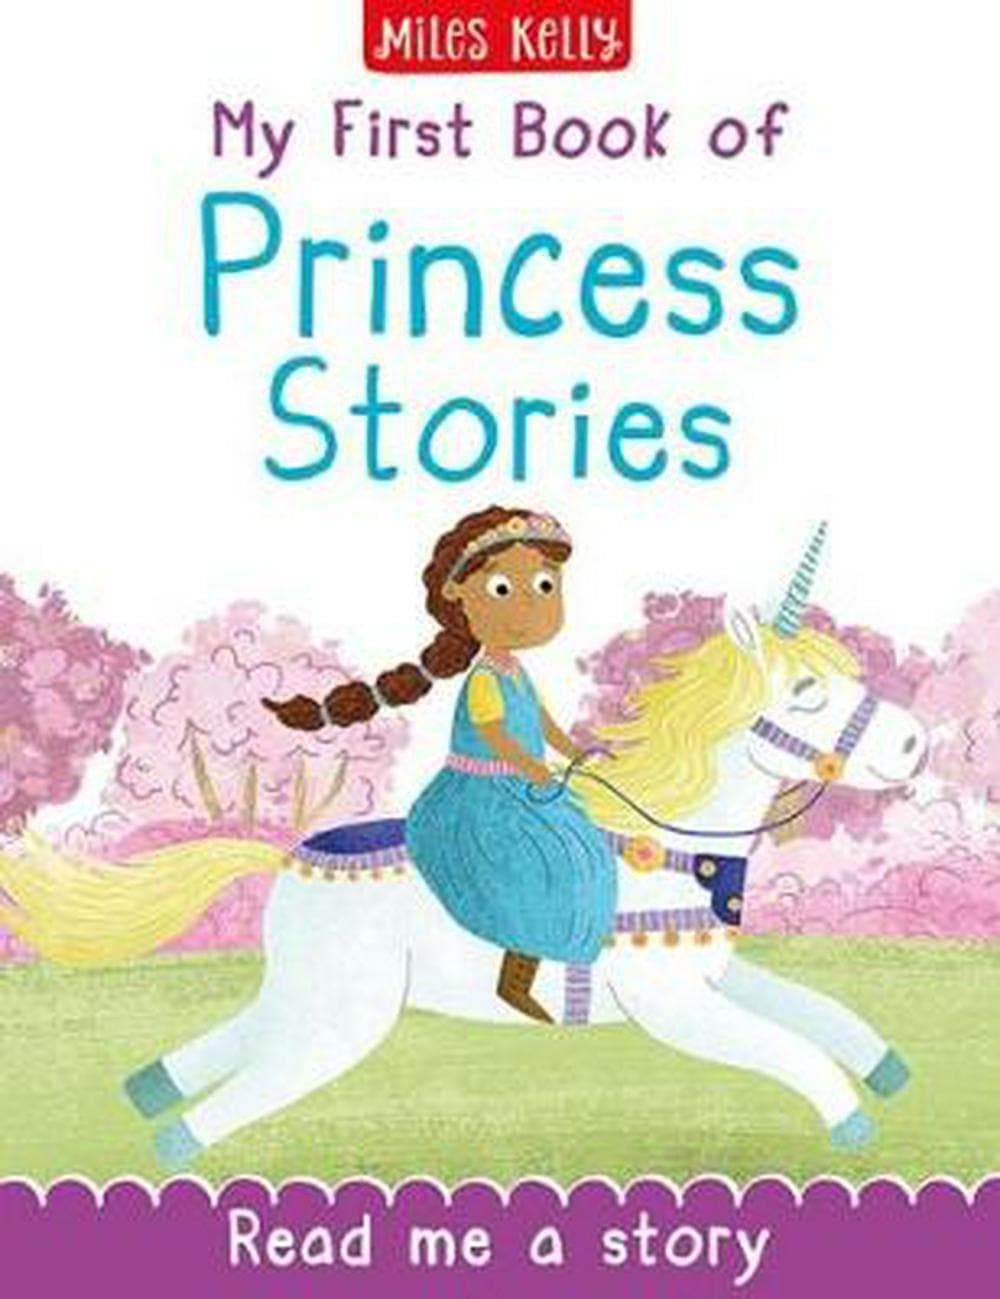 كتابي الأول من قصص الأميرة مايلز كيلي -- Jashanmal الرئيسية